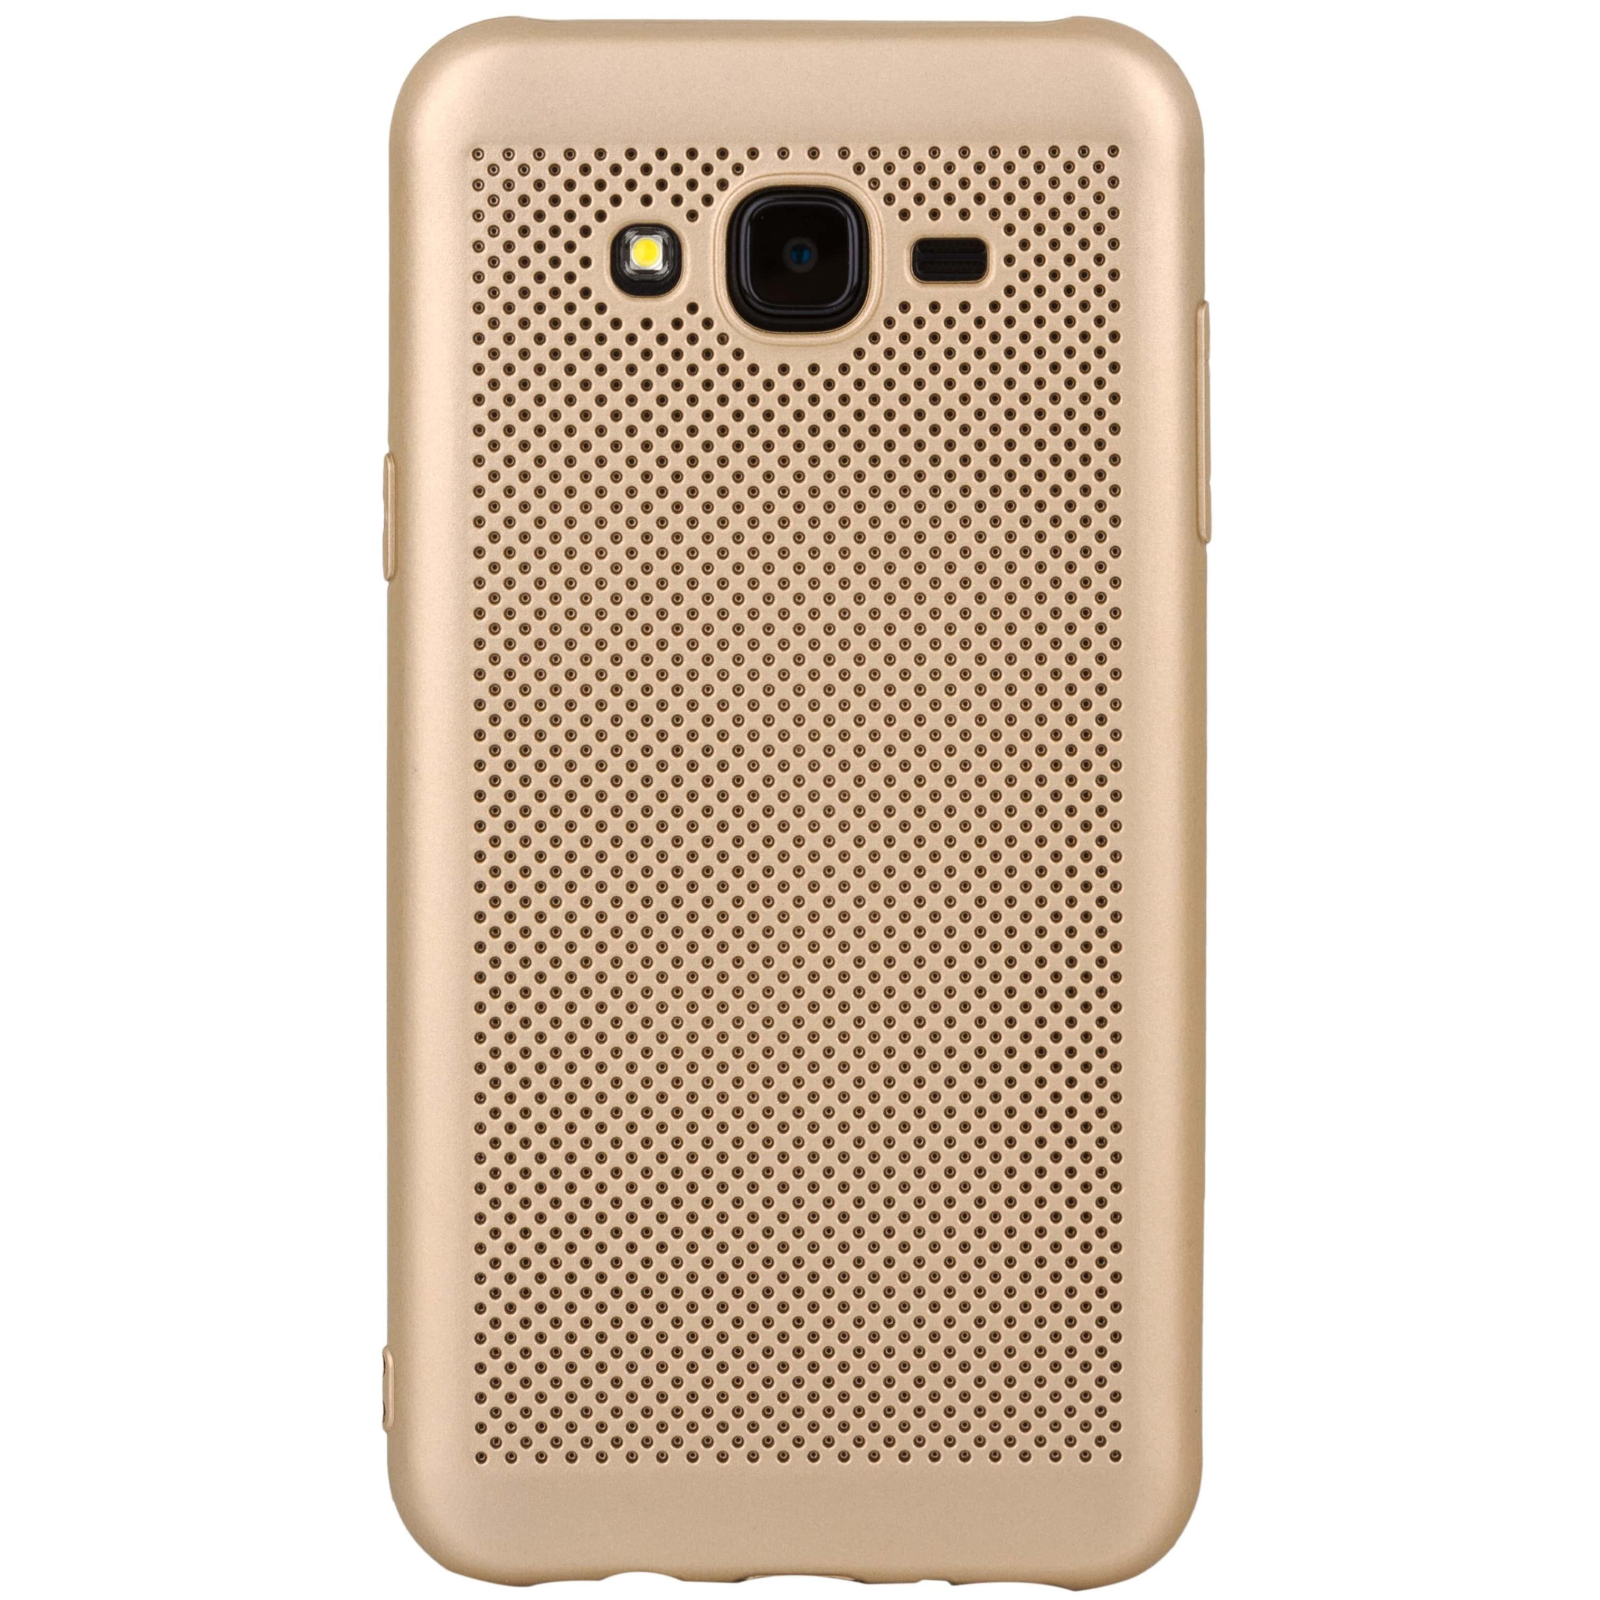 Чехол для мобильного телефона MakeFuture Moon Case (TPU) для Samsung J7 Neo (J701) Gold (MCM-SJ7NGD)